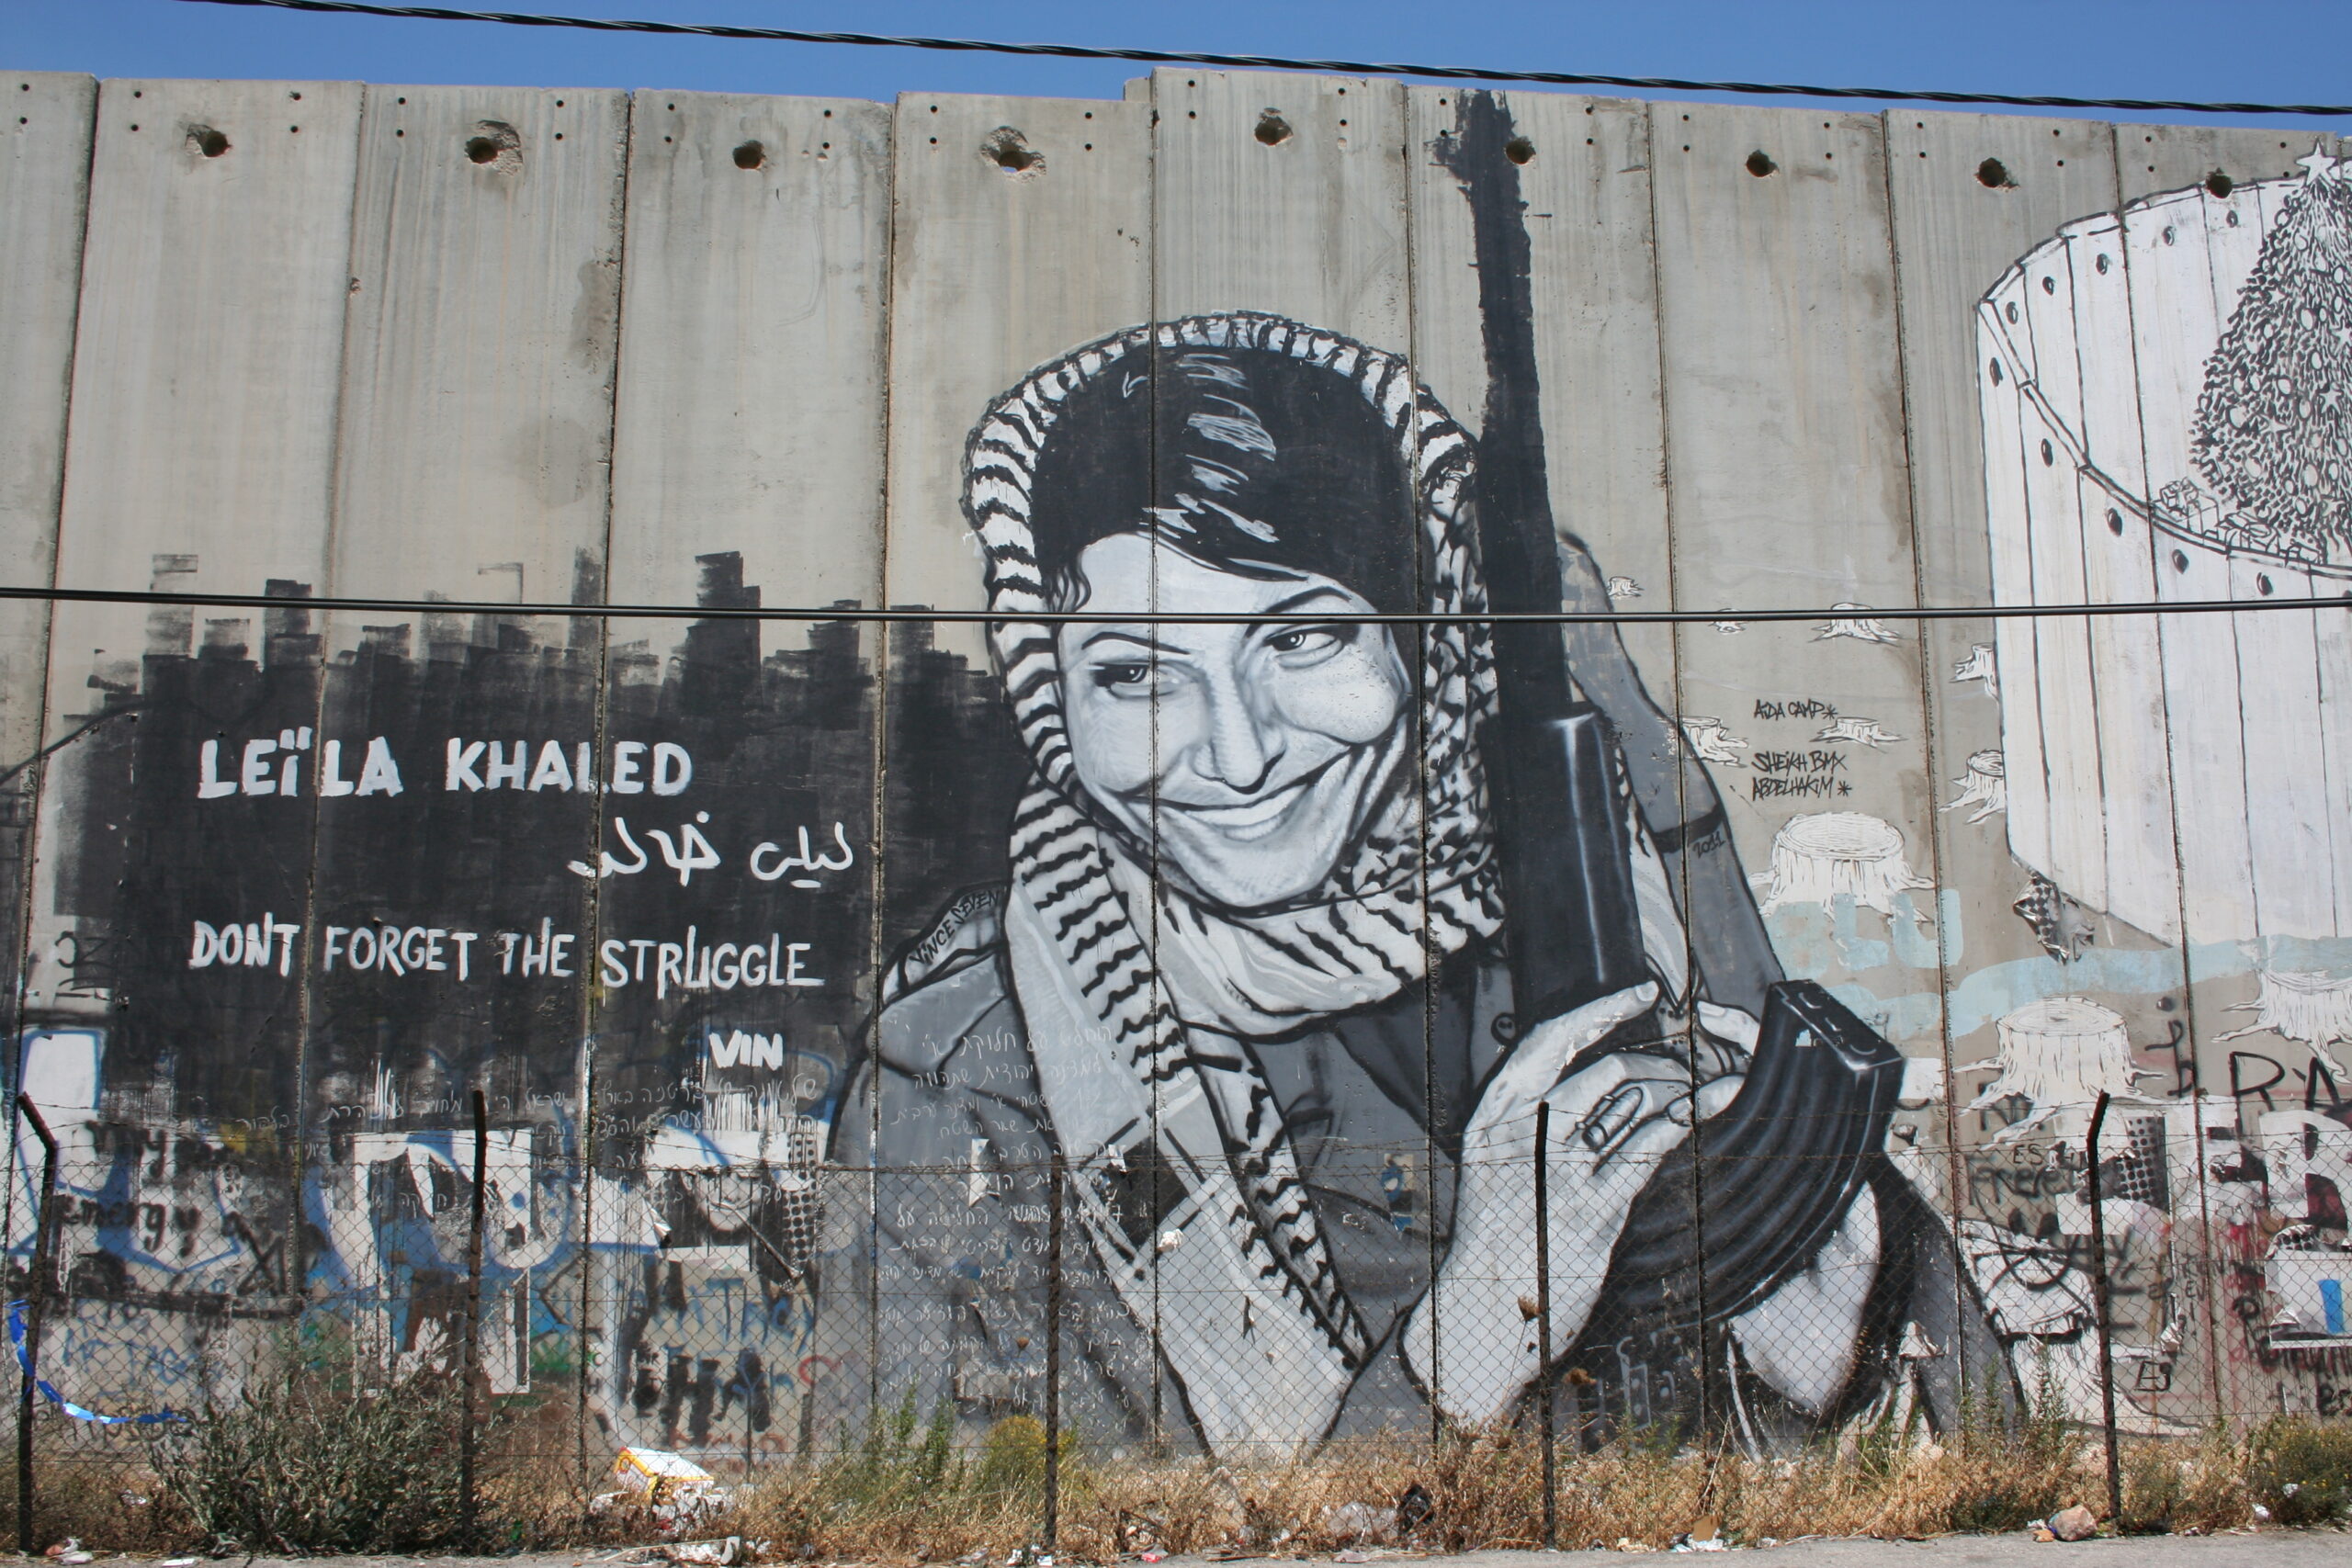 Graffiti on wall that tells a different narrative